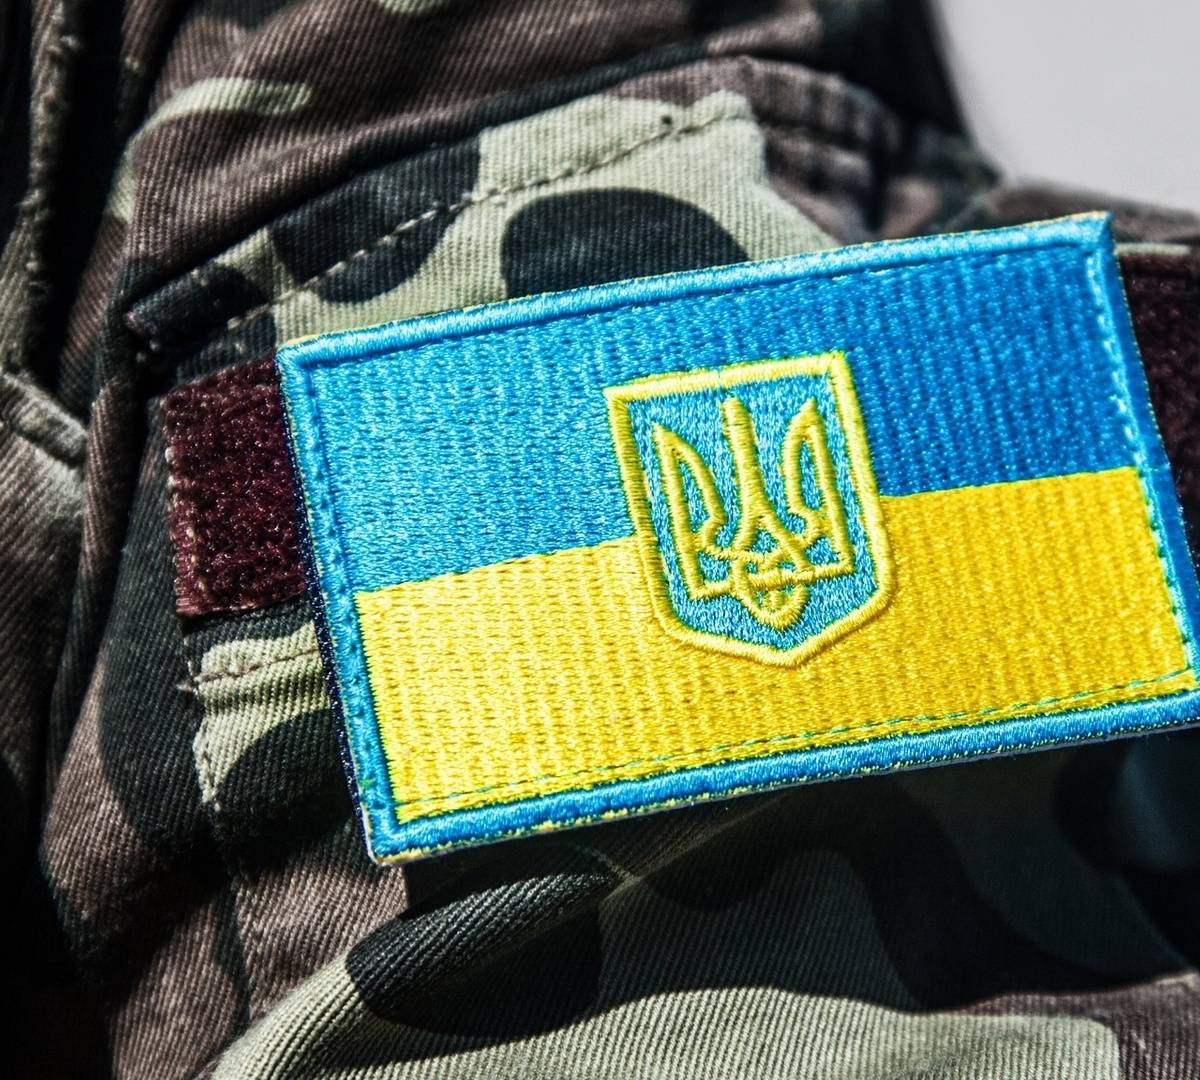 Вооруженный мужчина в форме НАТО с флагом Украины устроил провокацию в Ялте